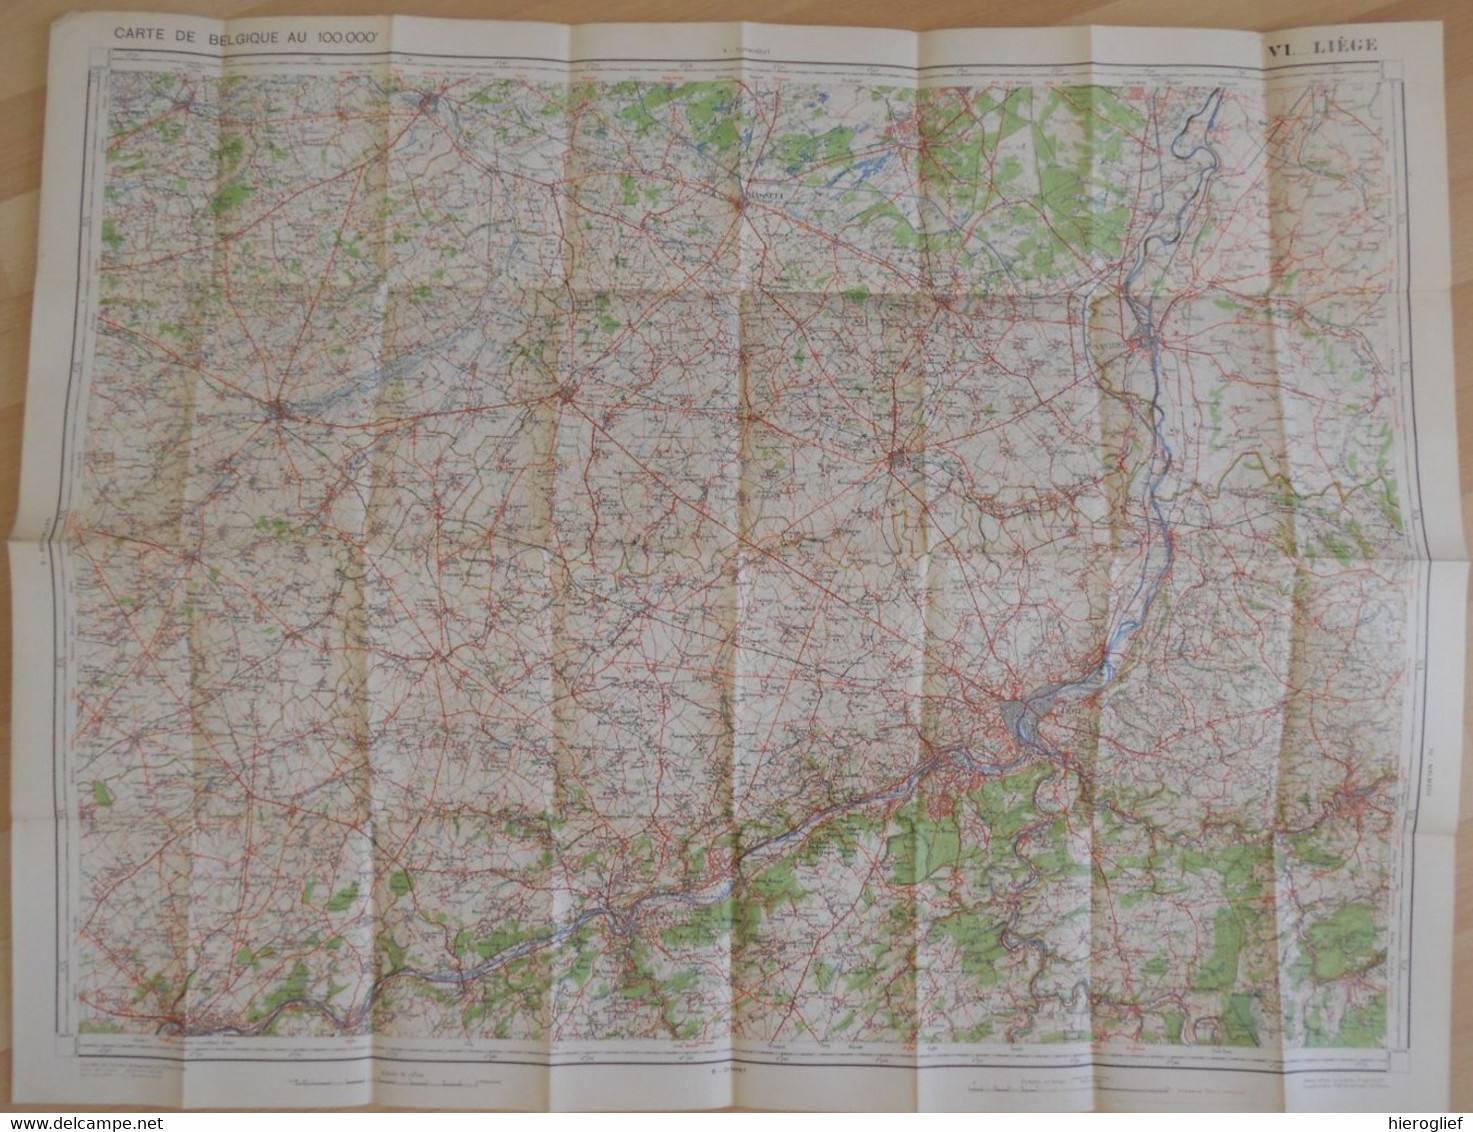 Carte De BELGIQUE Nr 6 LIEGE Institut Cartographique Militaire Impression Litho 1933 Maastricht Hasselt Tongeren Tienen - Topographical Maps